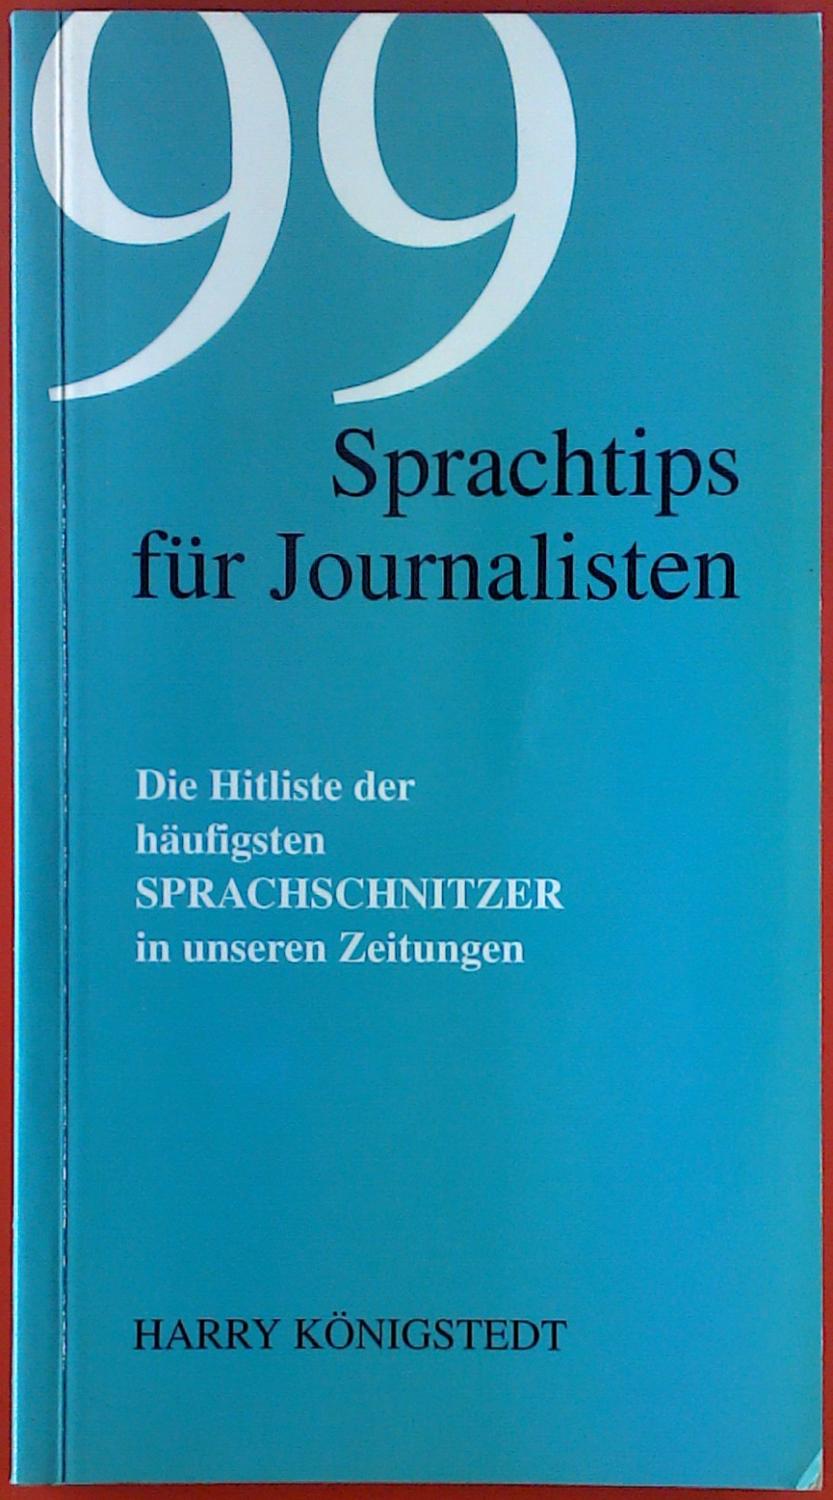 99 Sprachtips für Journalisten. Dir Hitliste der häufigsten Sprachschnitzer in unsere Zeitungen. - Harry Königstedt